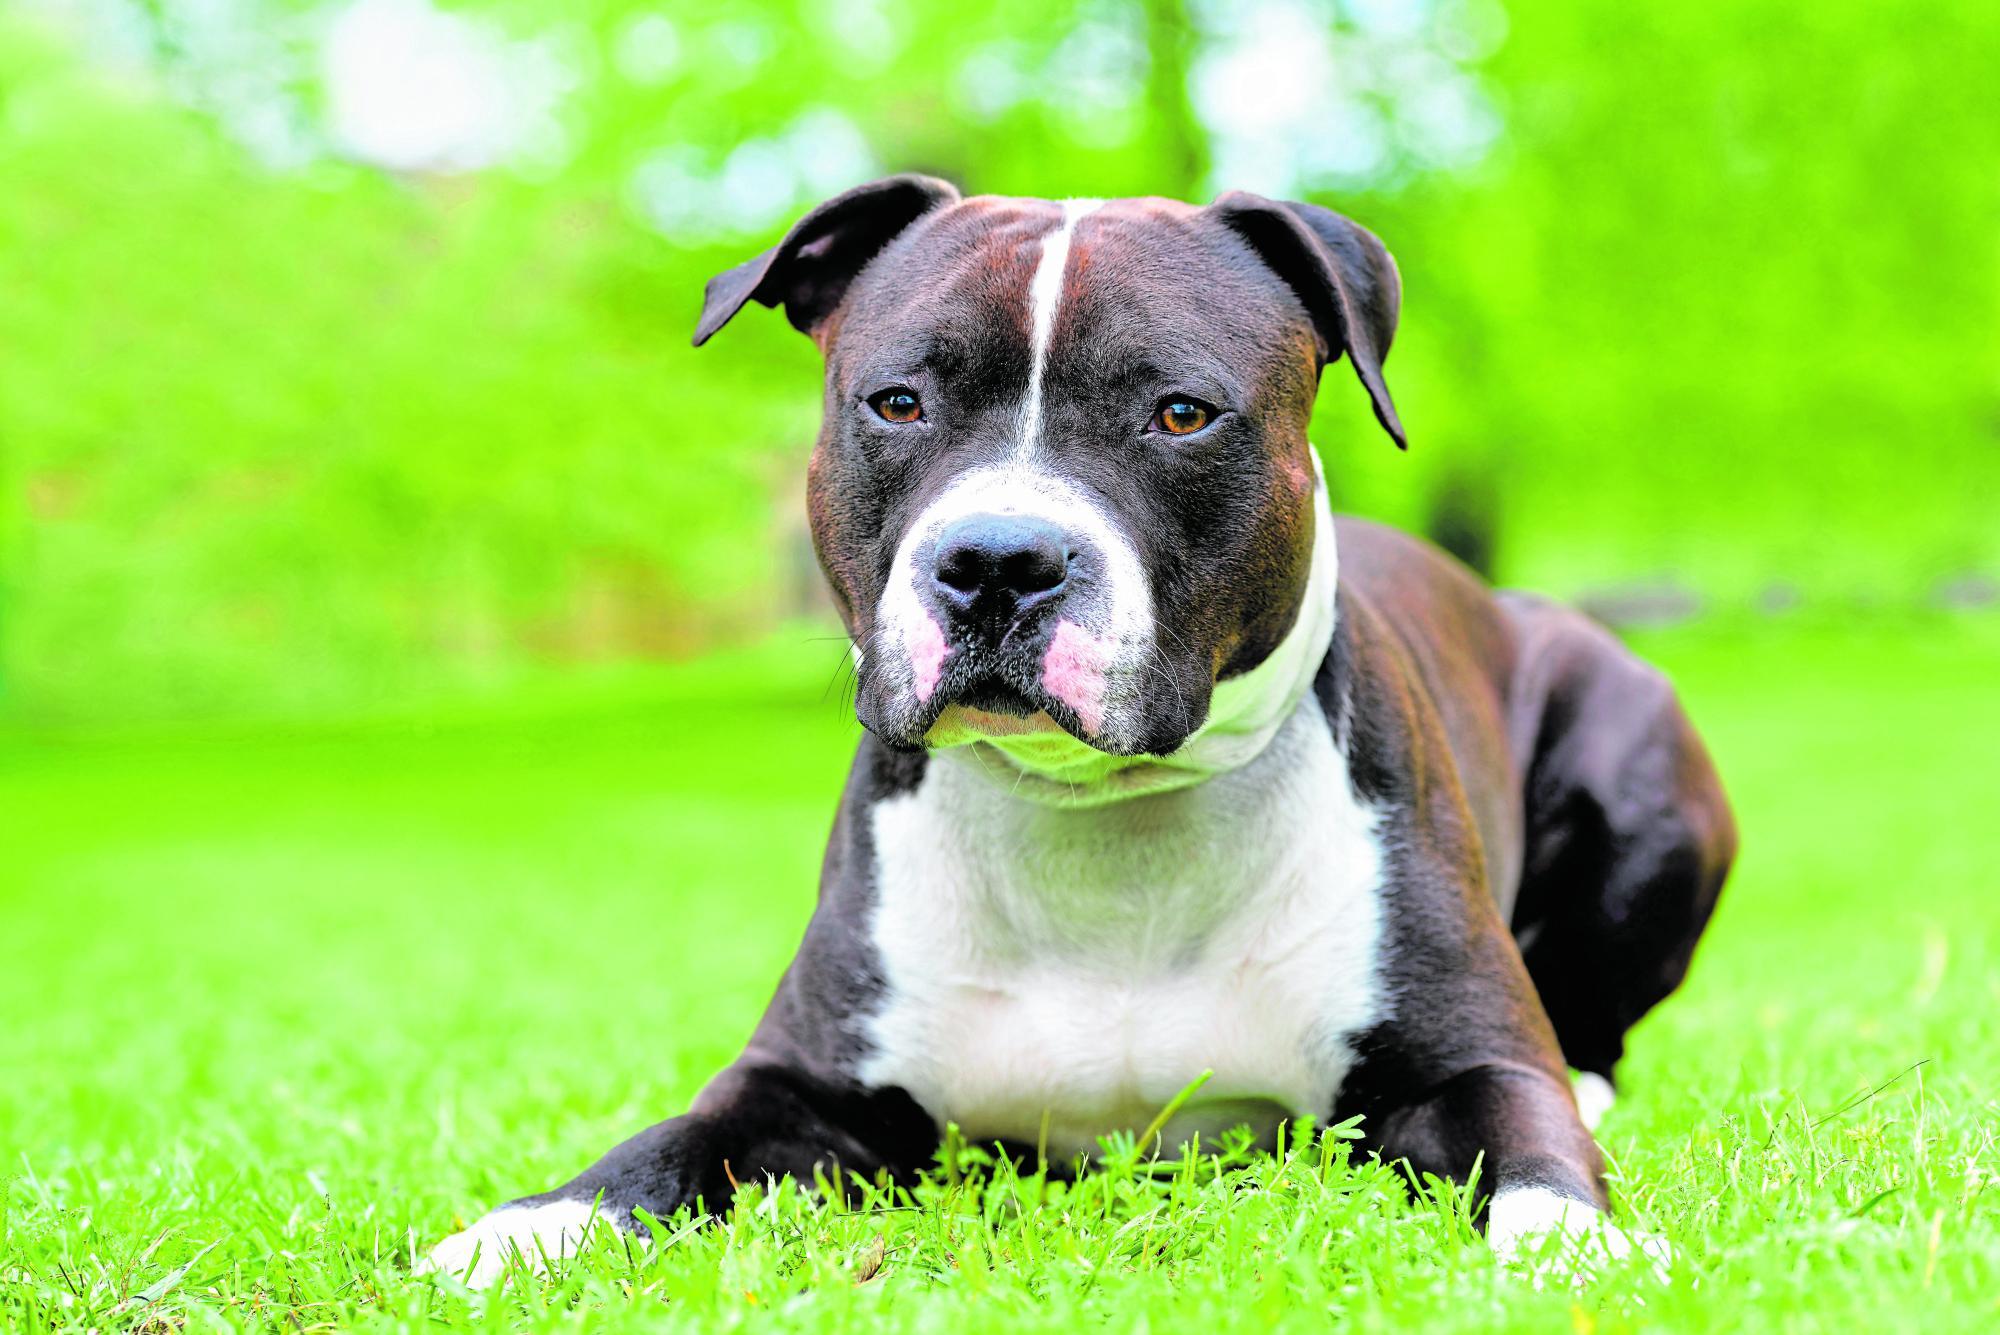 Amercian Staffordshire Terrier: Von der Kampfgrube ins Einfamilienhaus